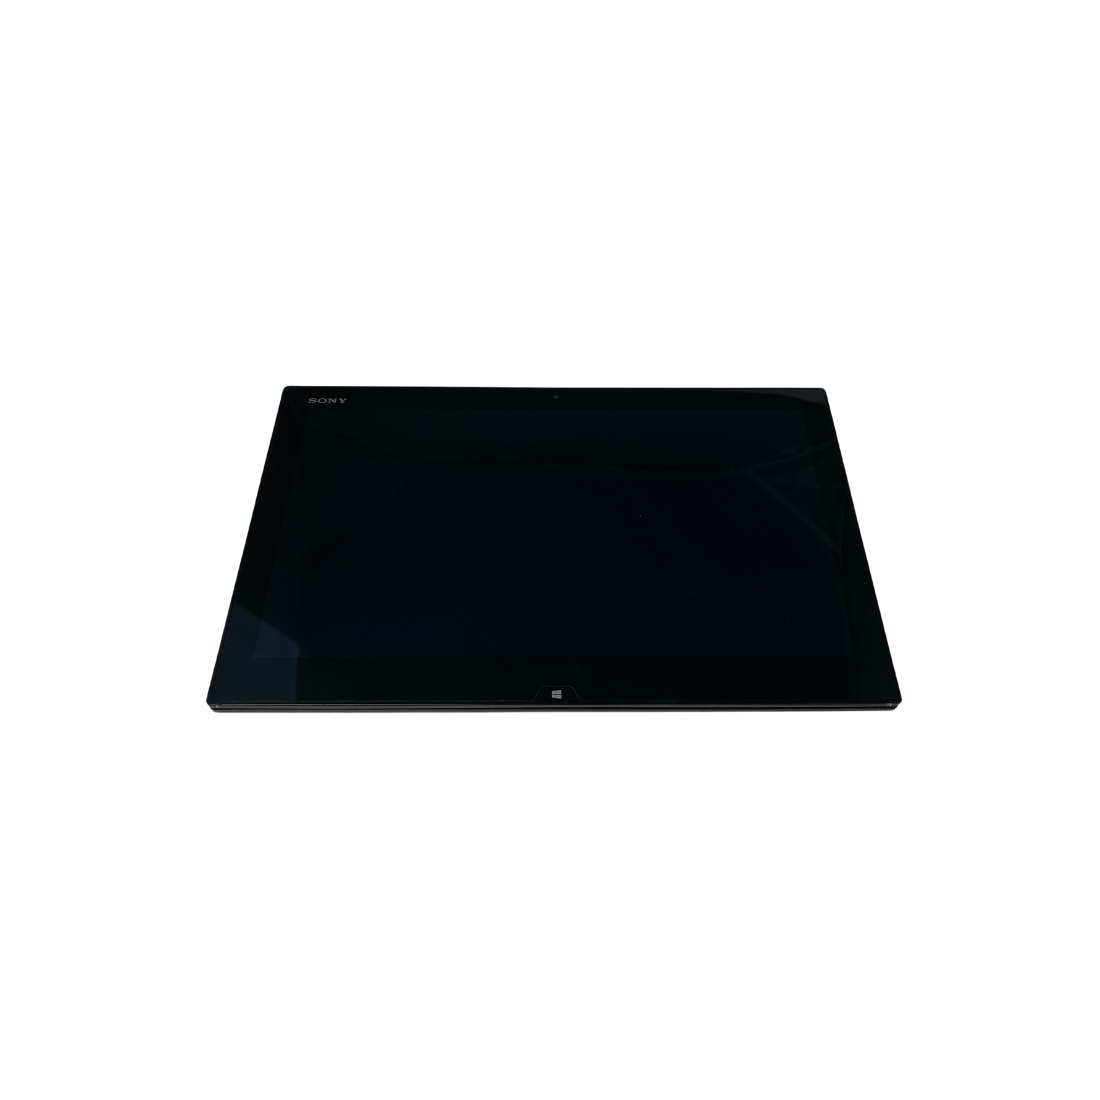 Black Laptop/Tablet